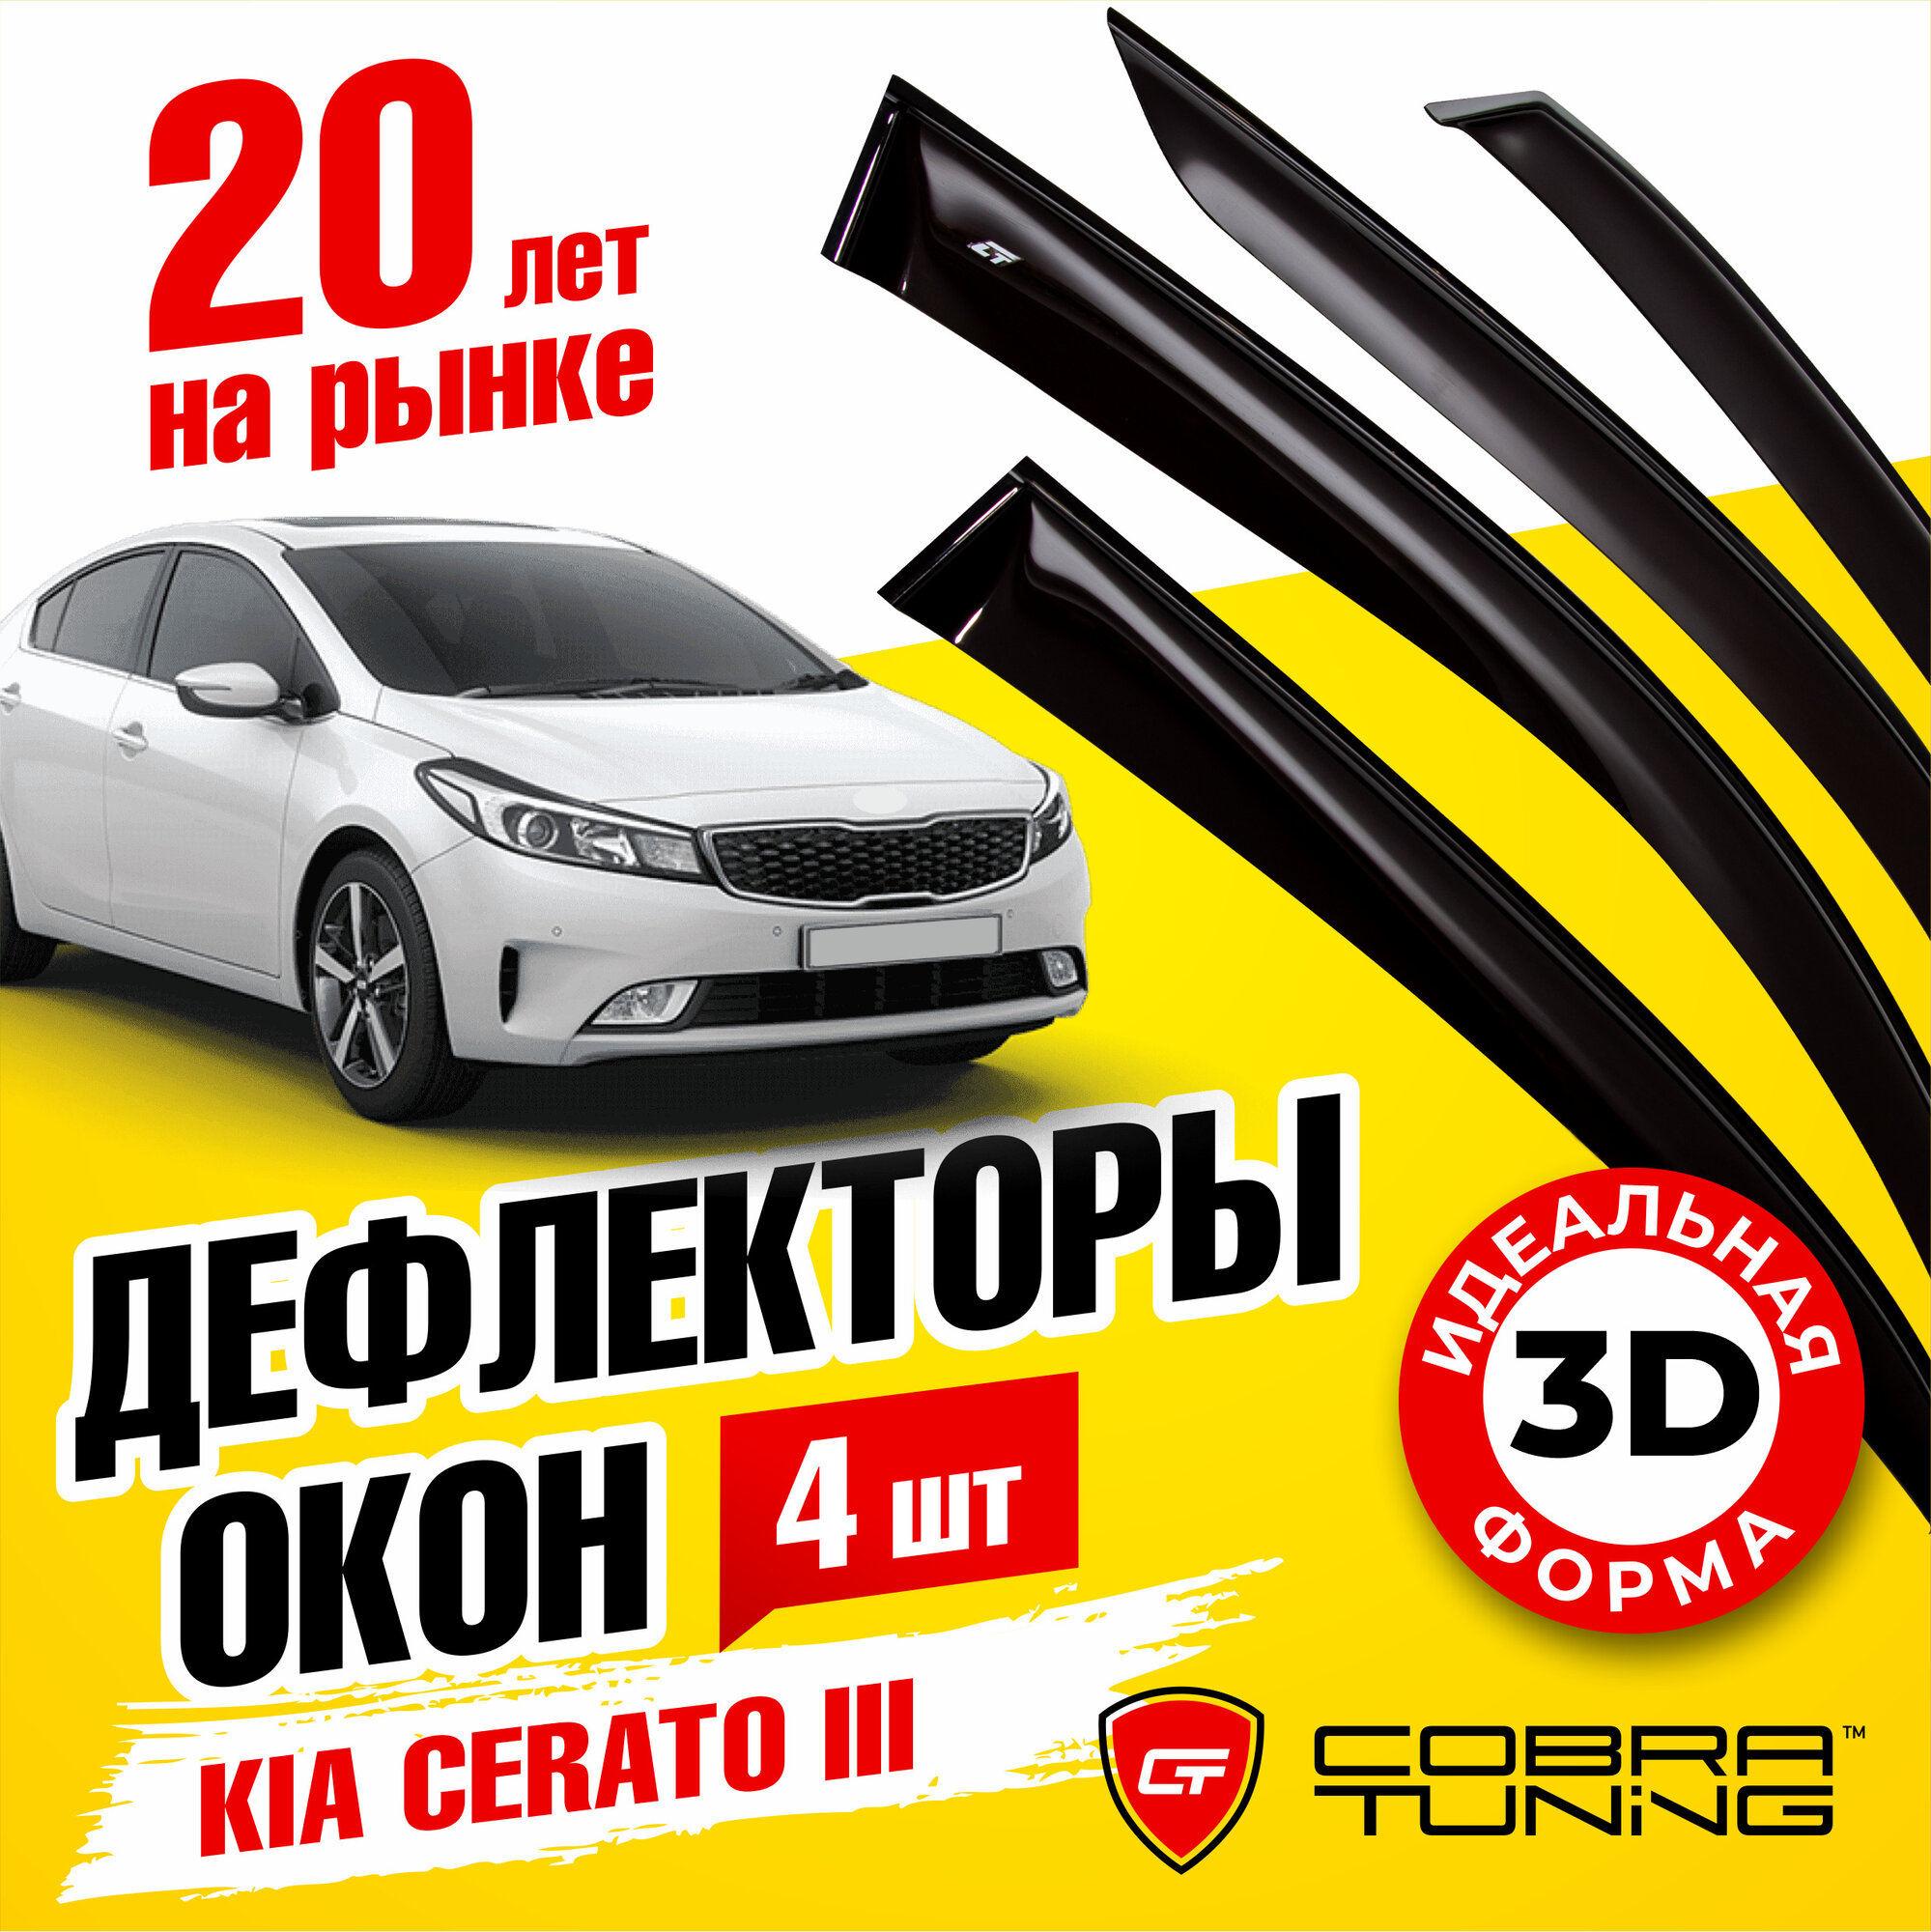 Дефлекторы боковых окон для Kia Cerato 3 (Киа Церато), K3, Forte, седан 2012-2020, ветровики на двери автомобиля, Cobra Tuning